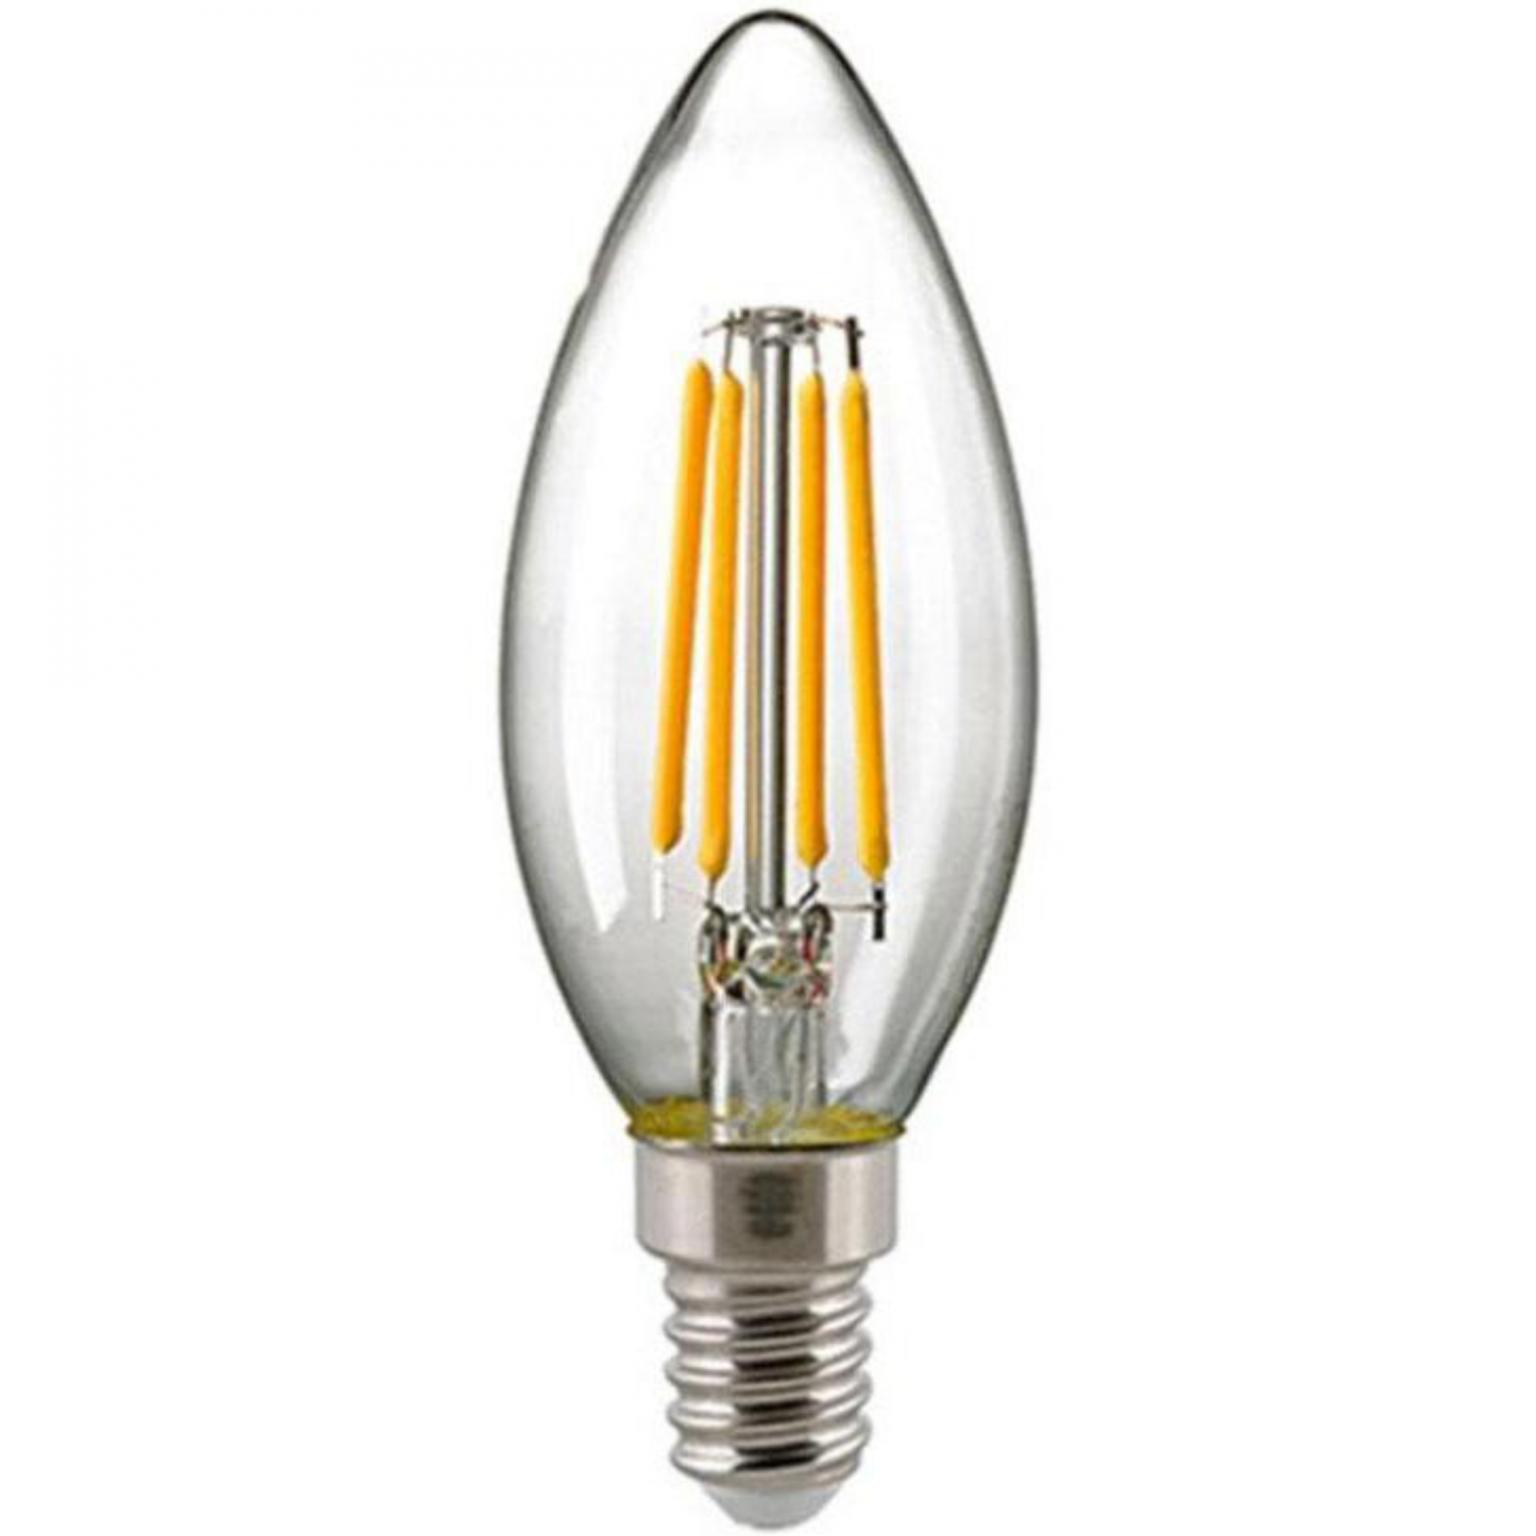 Kaarslamp - E14 - 470 lumen